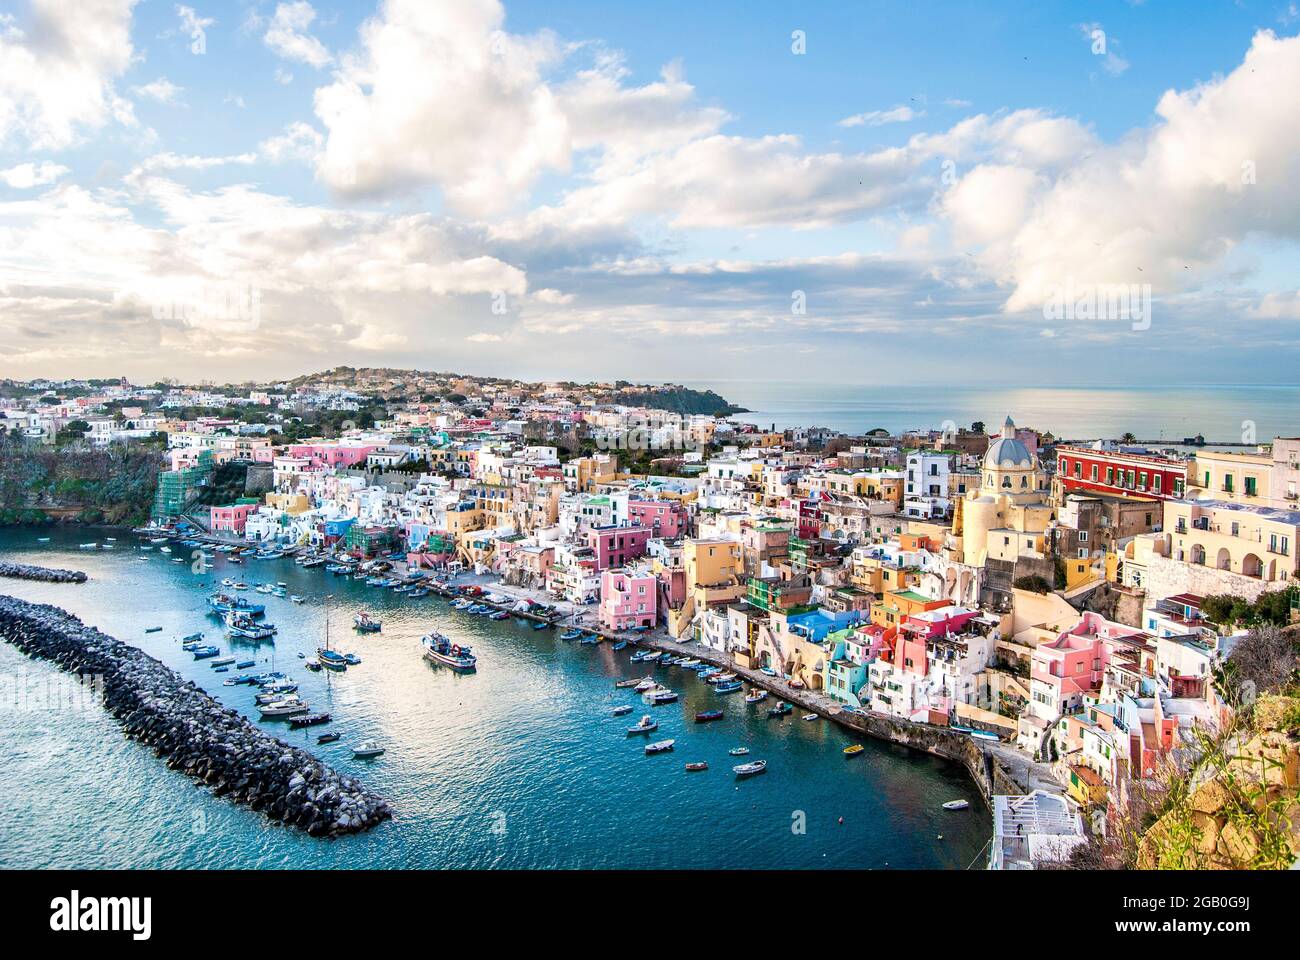 Vista panoramica di Marina Corricella, un villaggio di pescatori sull'isola di Procida, con edifici colorati, porto e barche, nell'isola di Procida, Napoli Foto Stock